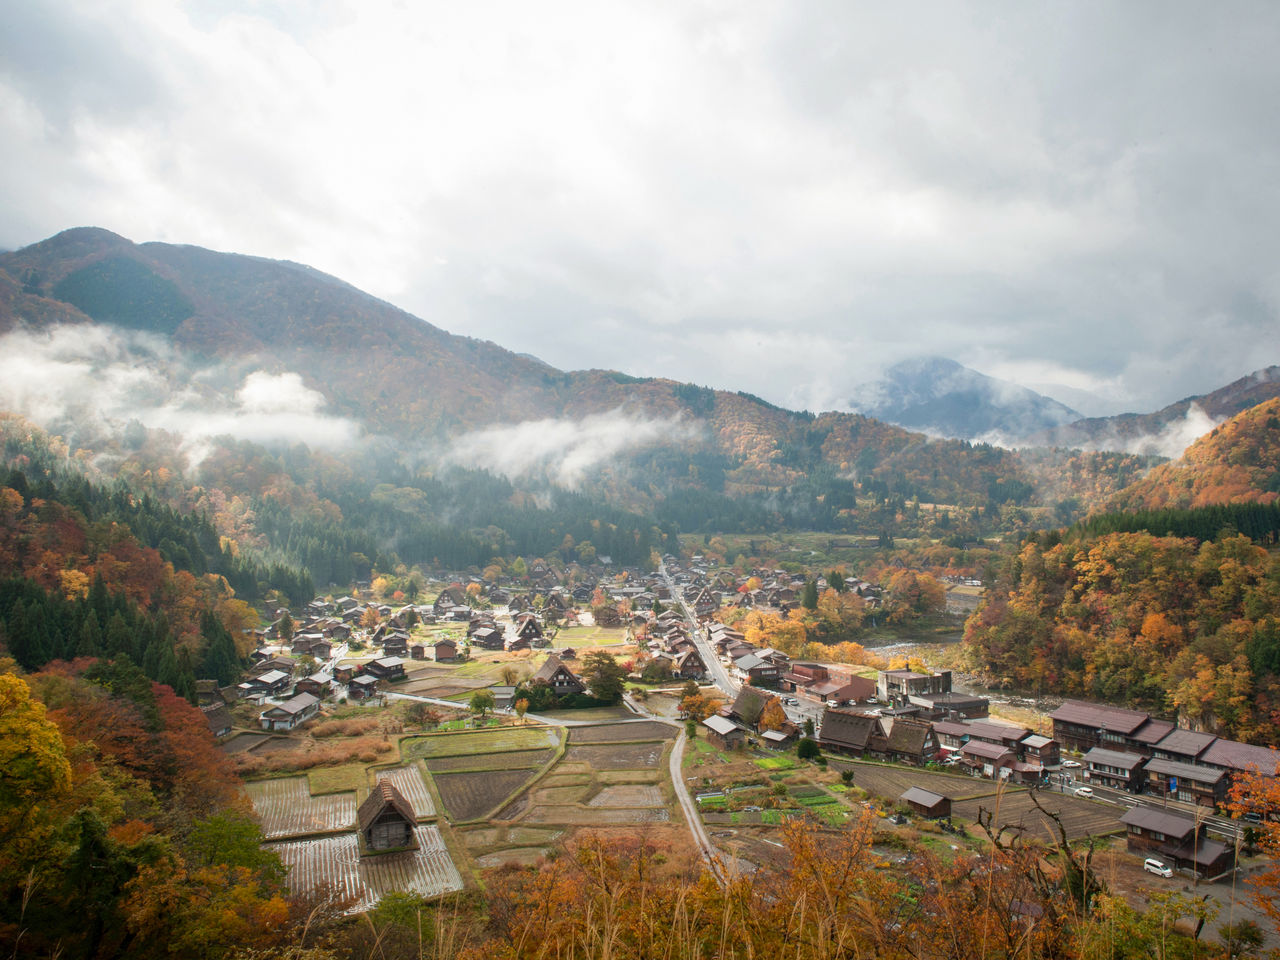 قرية أوغيماتشي الصغيرة في حلتها الخريفية، كما يمكن رؤيتها من منصة المراقبة تينشوكاكو.